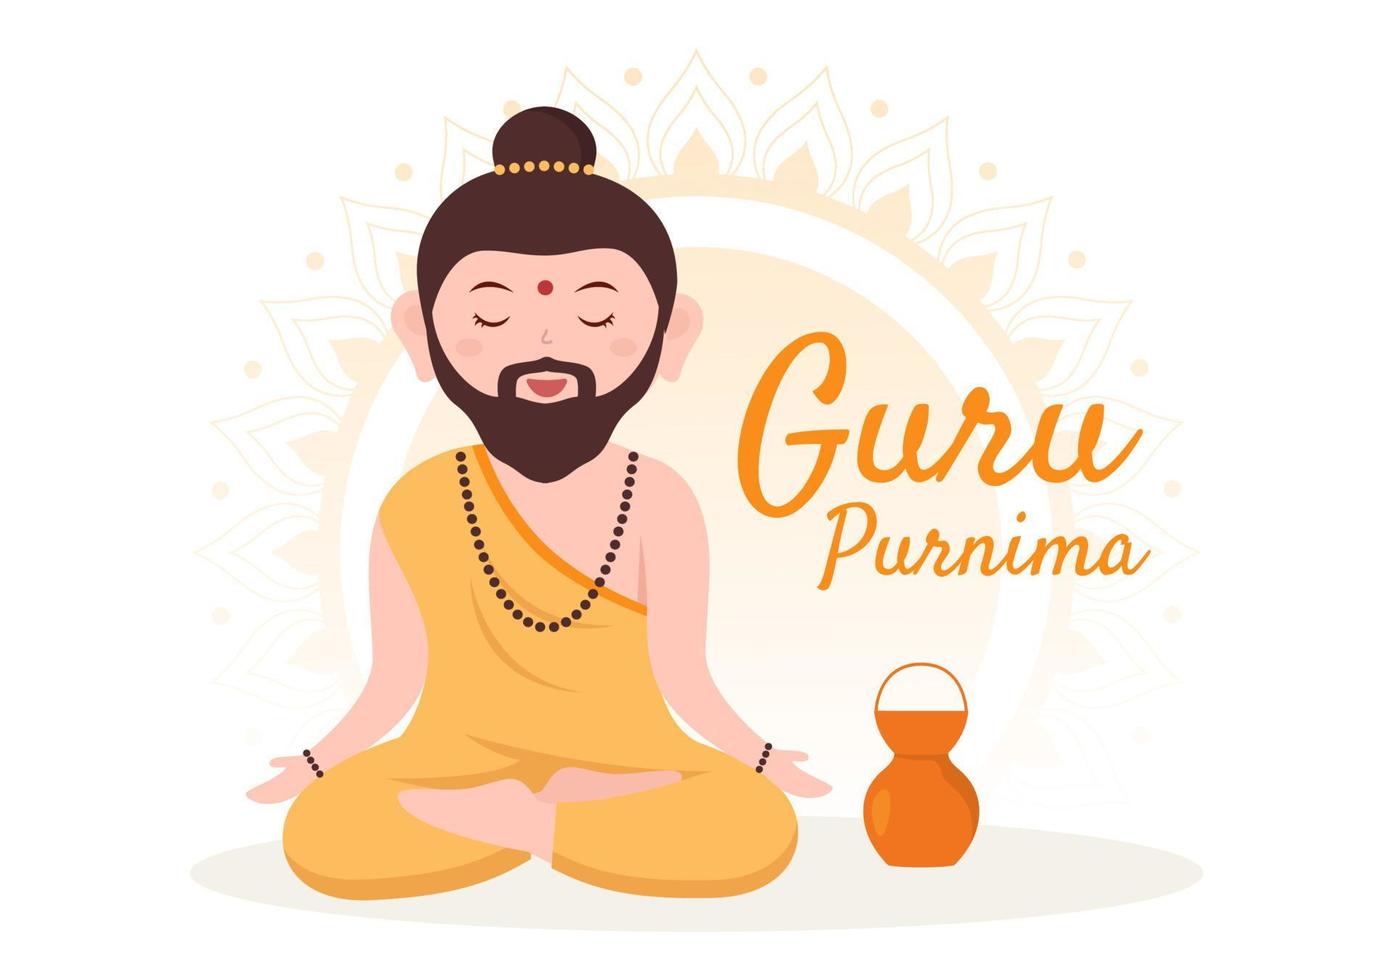 glücklicher guru purnima des indischen festivals für spirituelle und akademische lehrer in flacher karikaturblumenhintergrundillustration vektor